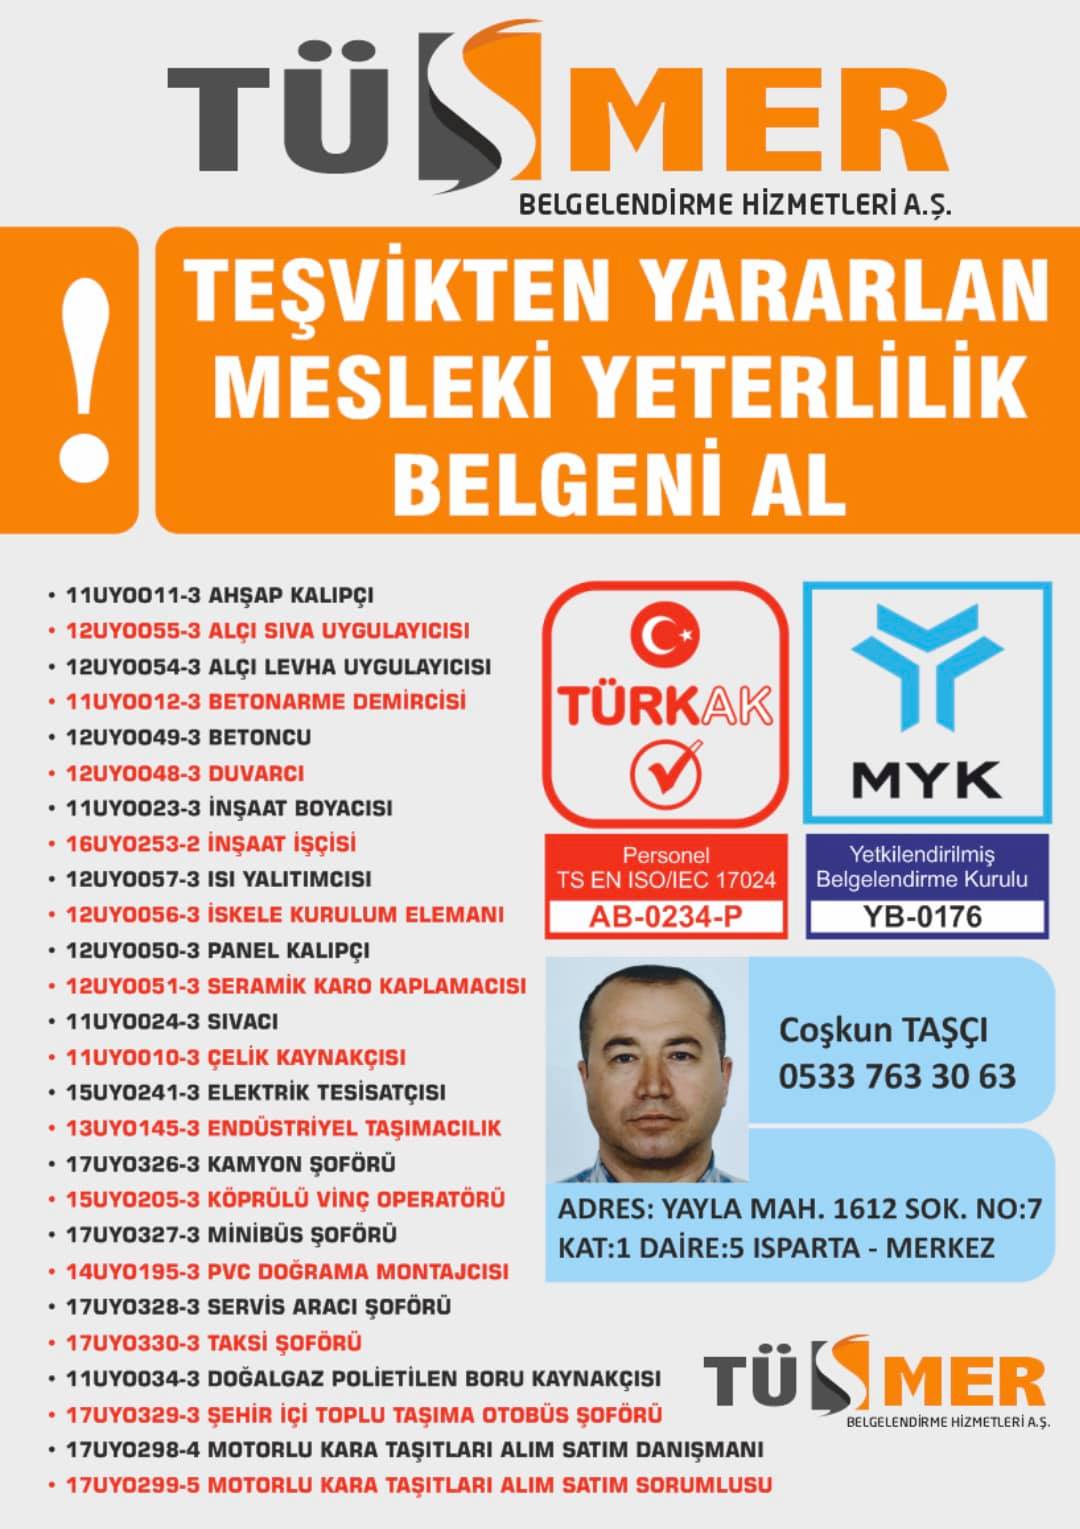 MYK MESLEKİ YETERLİLİK BELGESİ Topselvi Kartal İstanbul